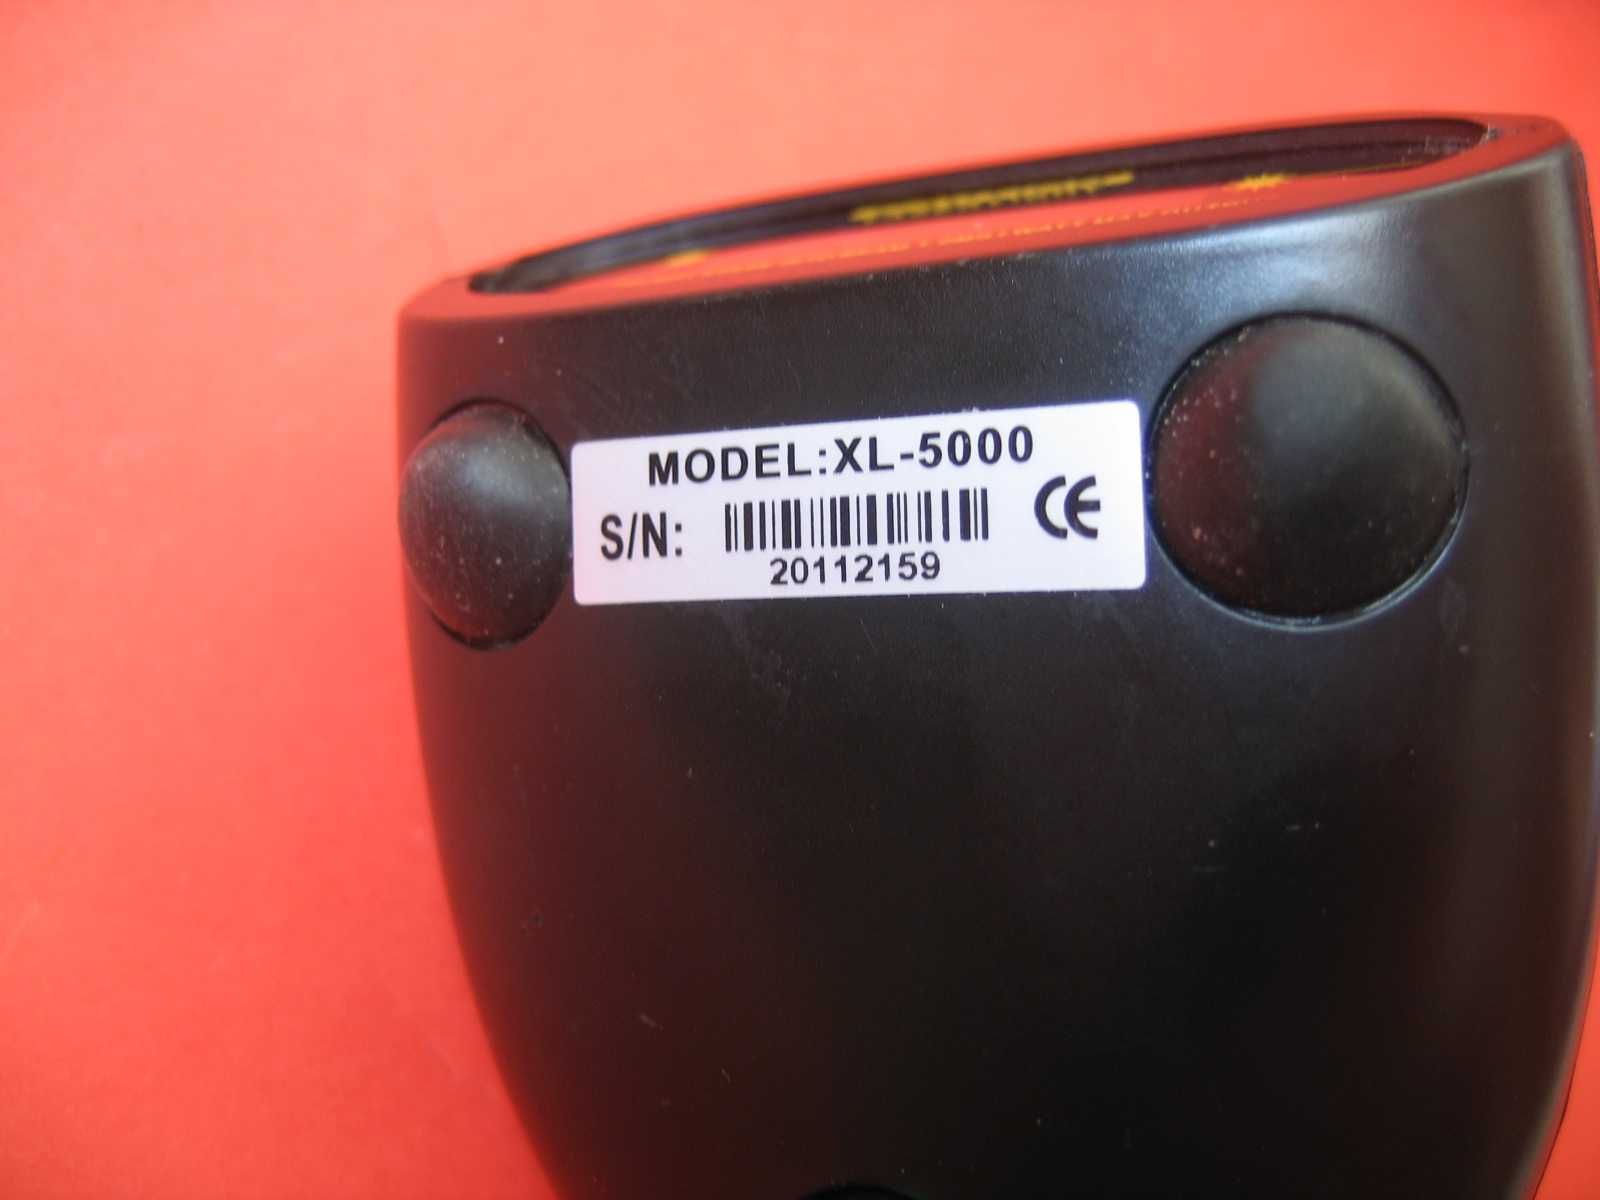 Skaner czytnik kodów paskowych

XL-5000 - USB - ręczny